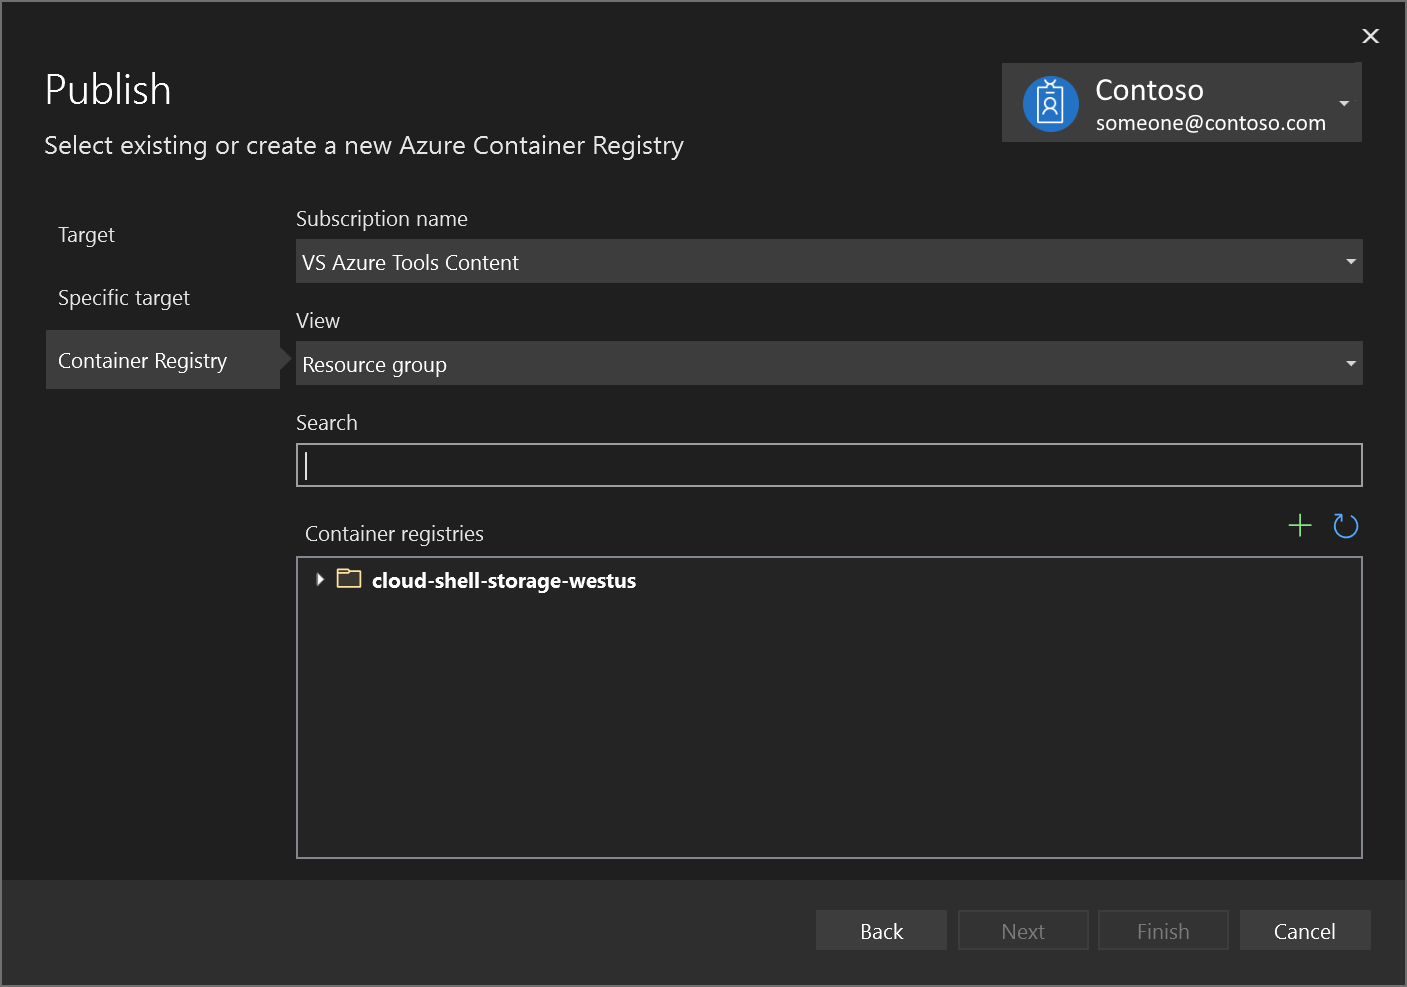 Captura de tela da caixa de diálogo Publicar – escolha Criar um Registro de Contêiner do Azure.